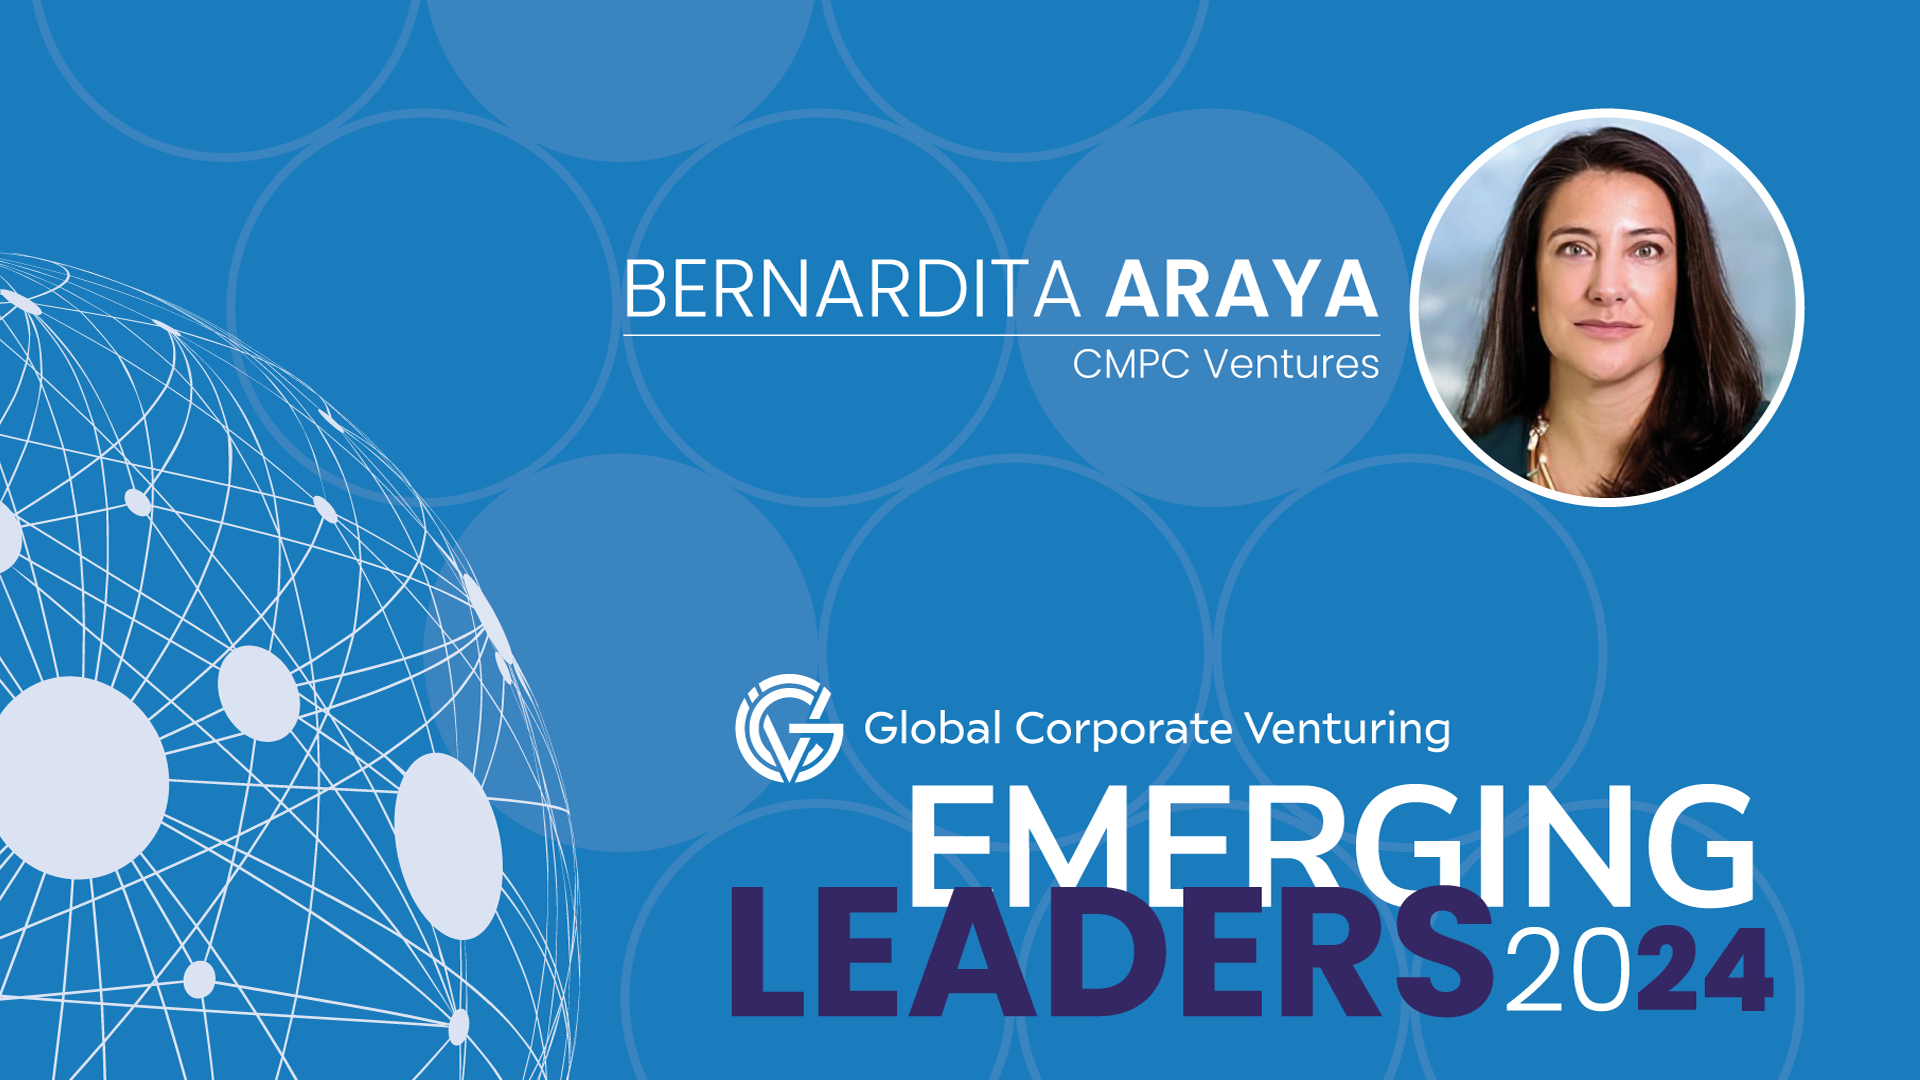 Bernardita Araya, CMPC Ventures